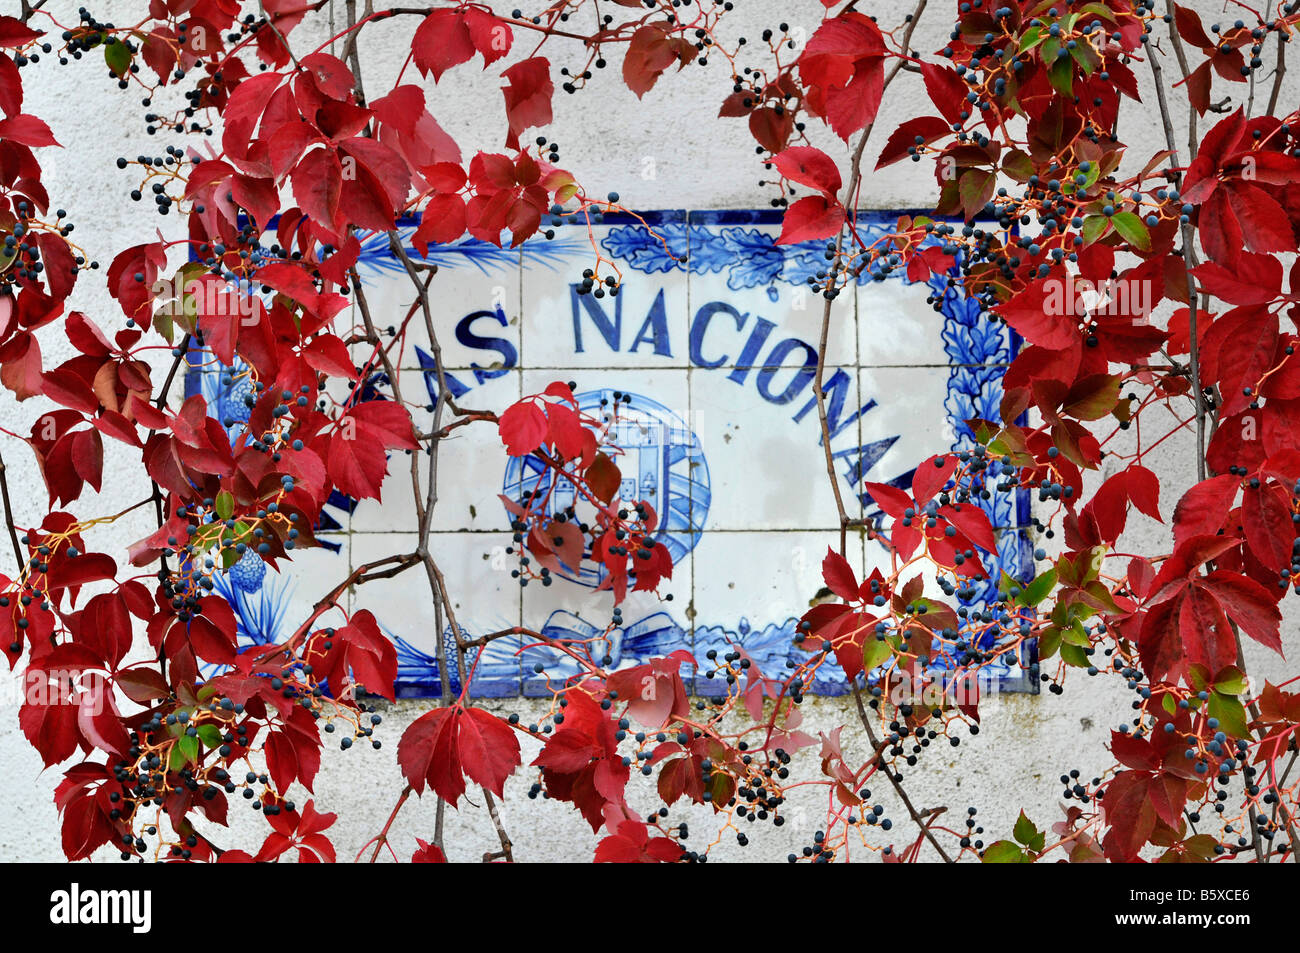 Vigne vierge sur une plaque d'information. Matas Nacionais. Tomar, Portugal Banque D'Images